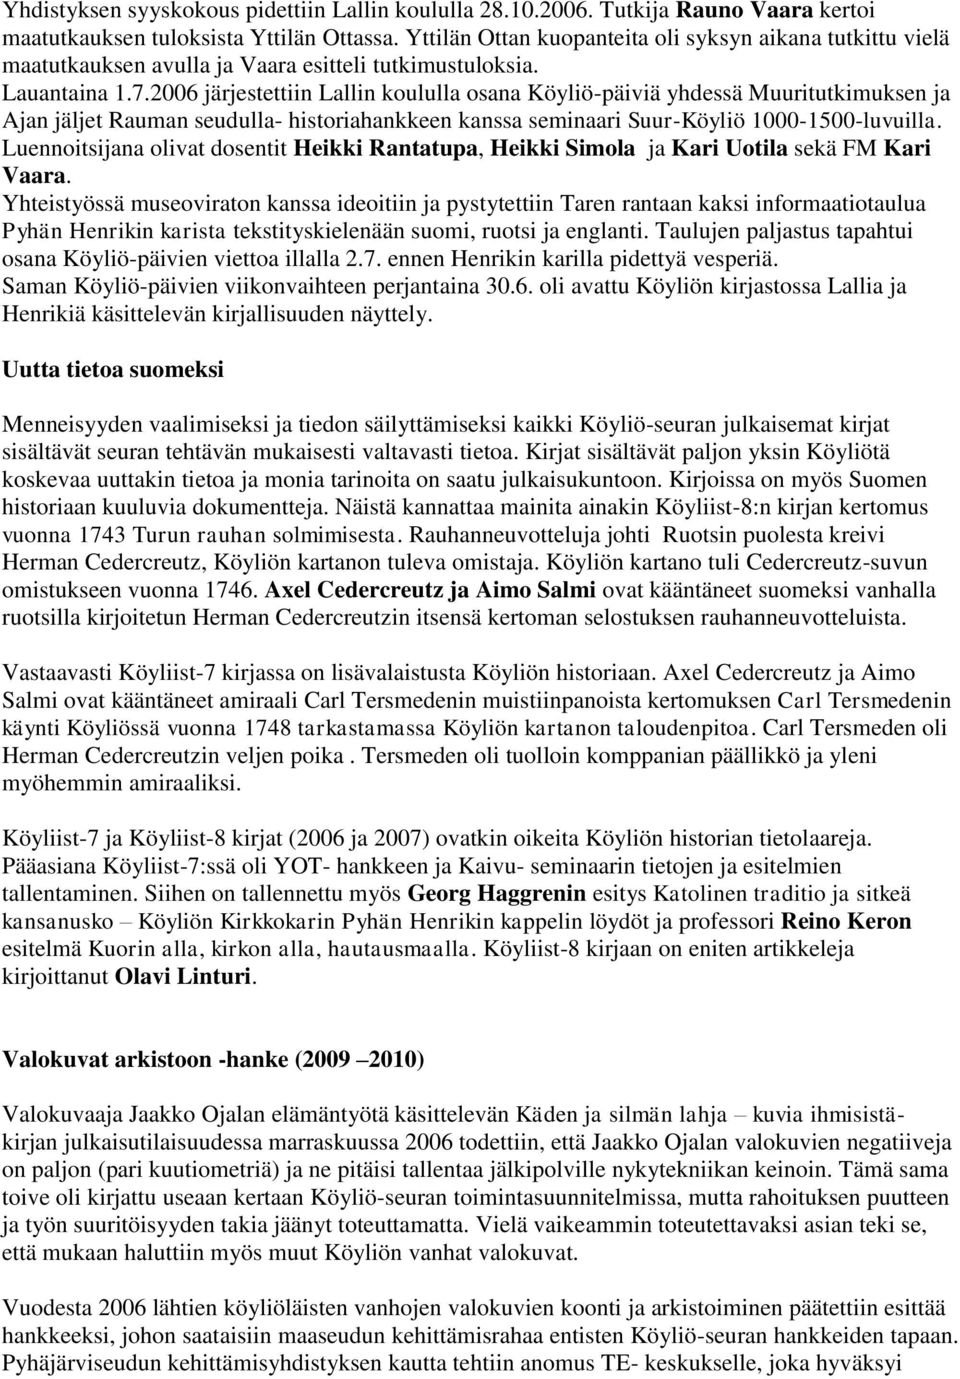 2006 järjestettiin Lallin koululla osana Köyliö-päiviä yhdessä Muuritutkimuksen ja Ajan jäljet Rauman seudulla- historiahankkeen kanssa seminaari Suur-Köyliö 1000-1500-luvuilla.